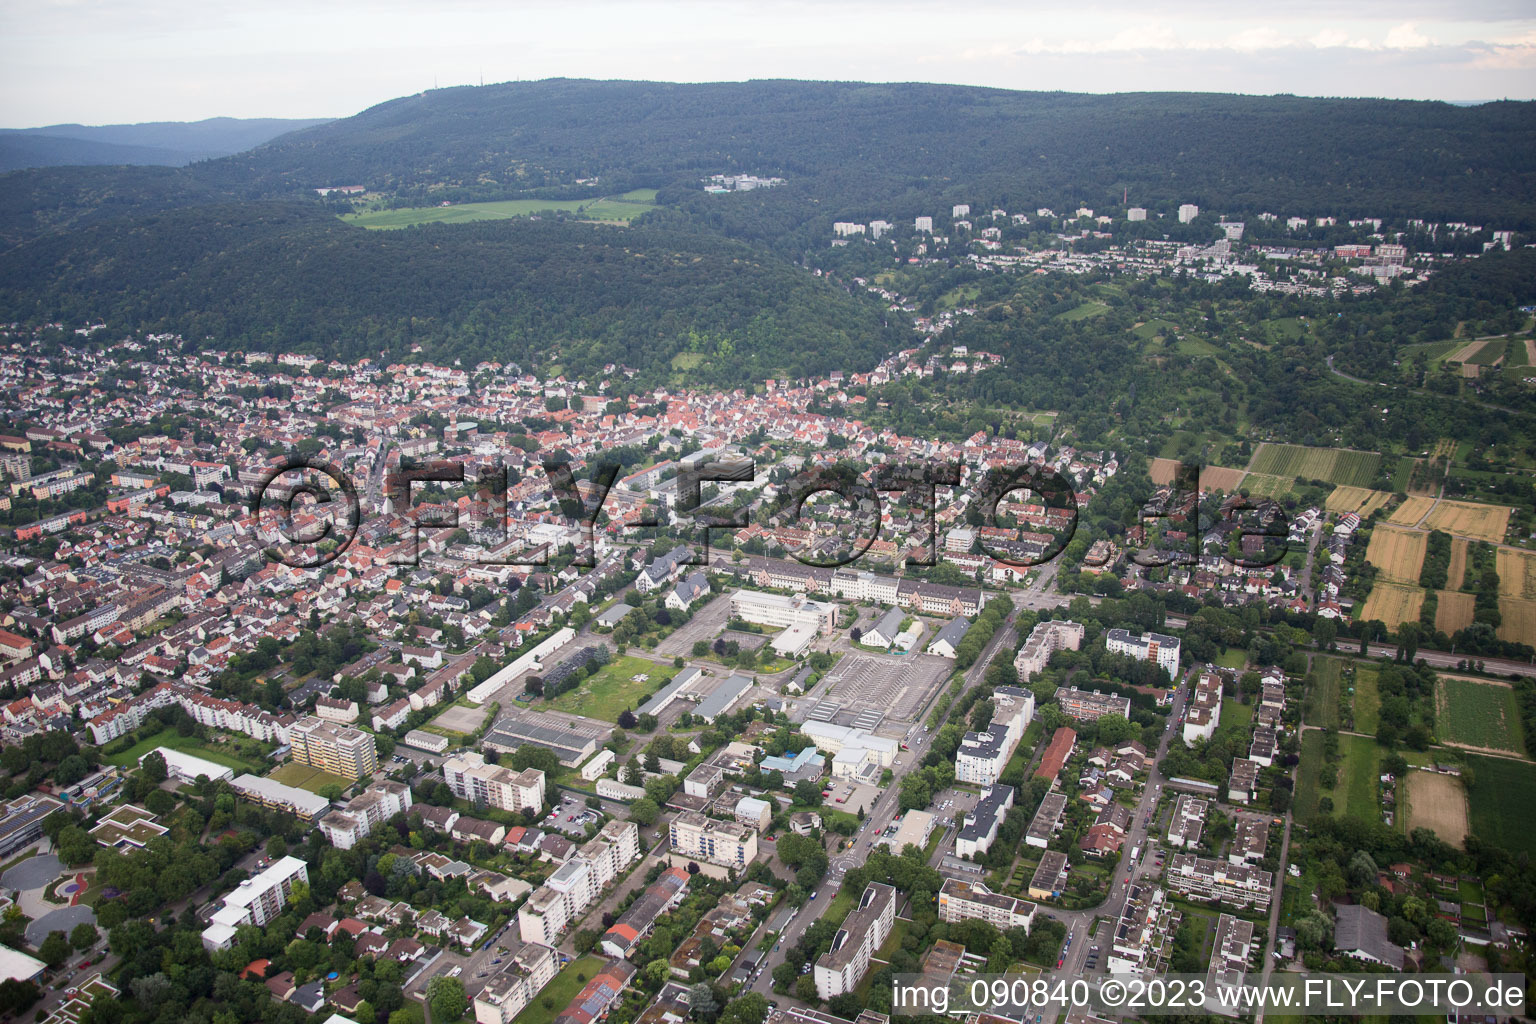 Quartier Rohrbach in Heidelberg dans le département Bade-Wurtemberg, Allemagne hors des airs